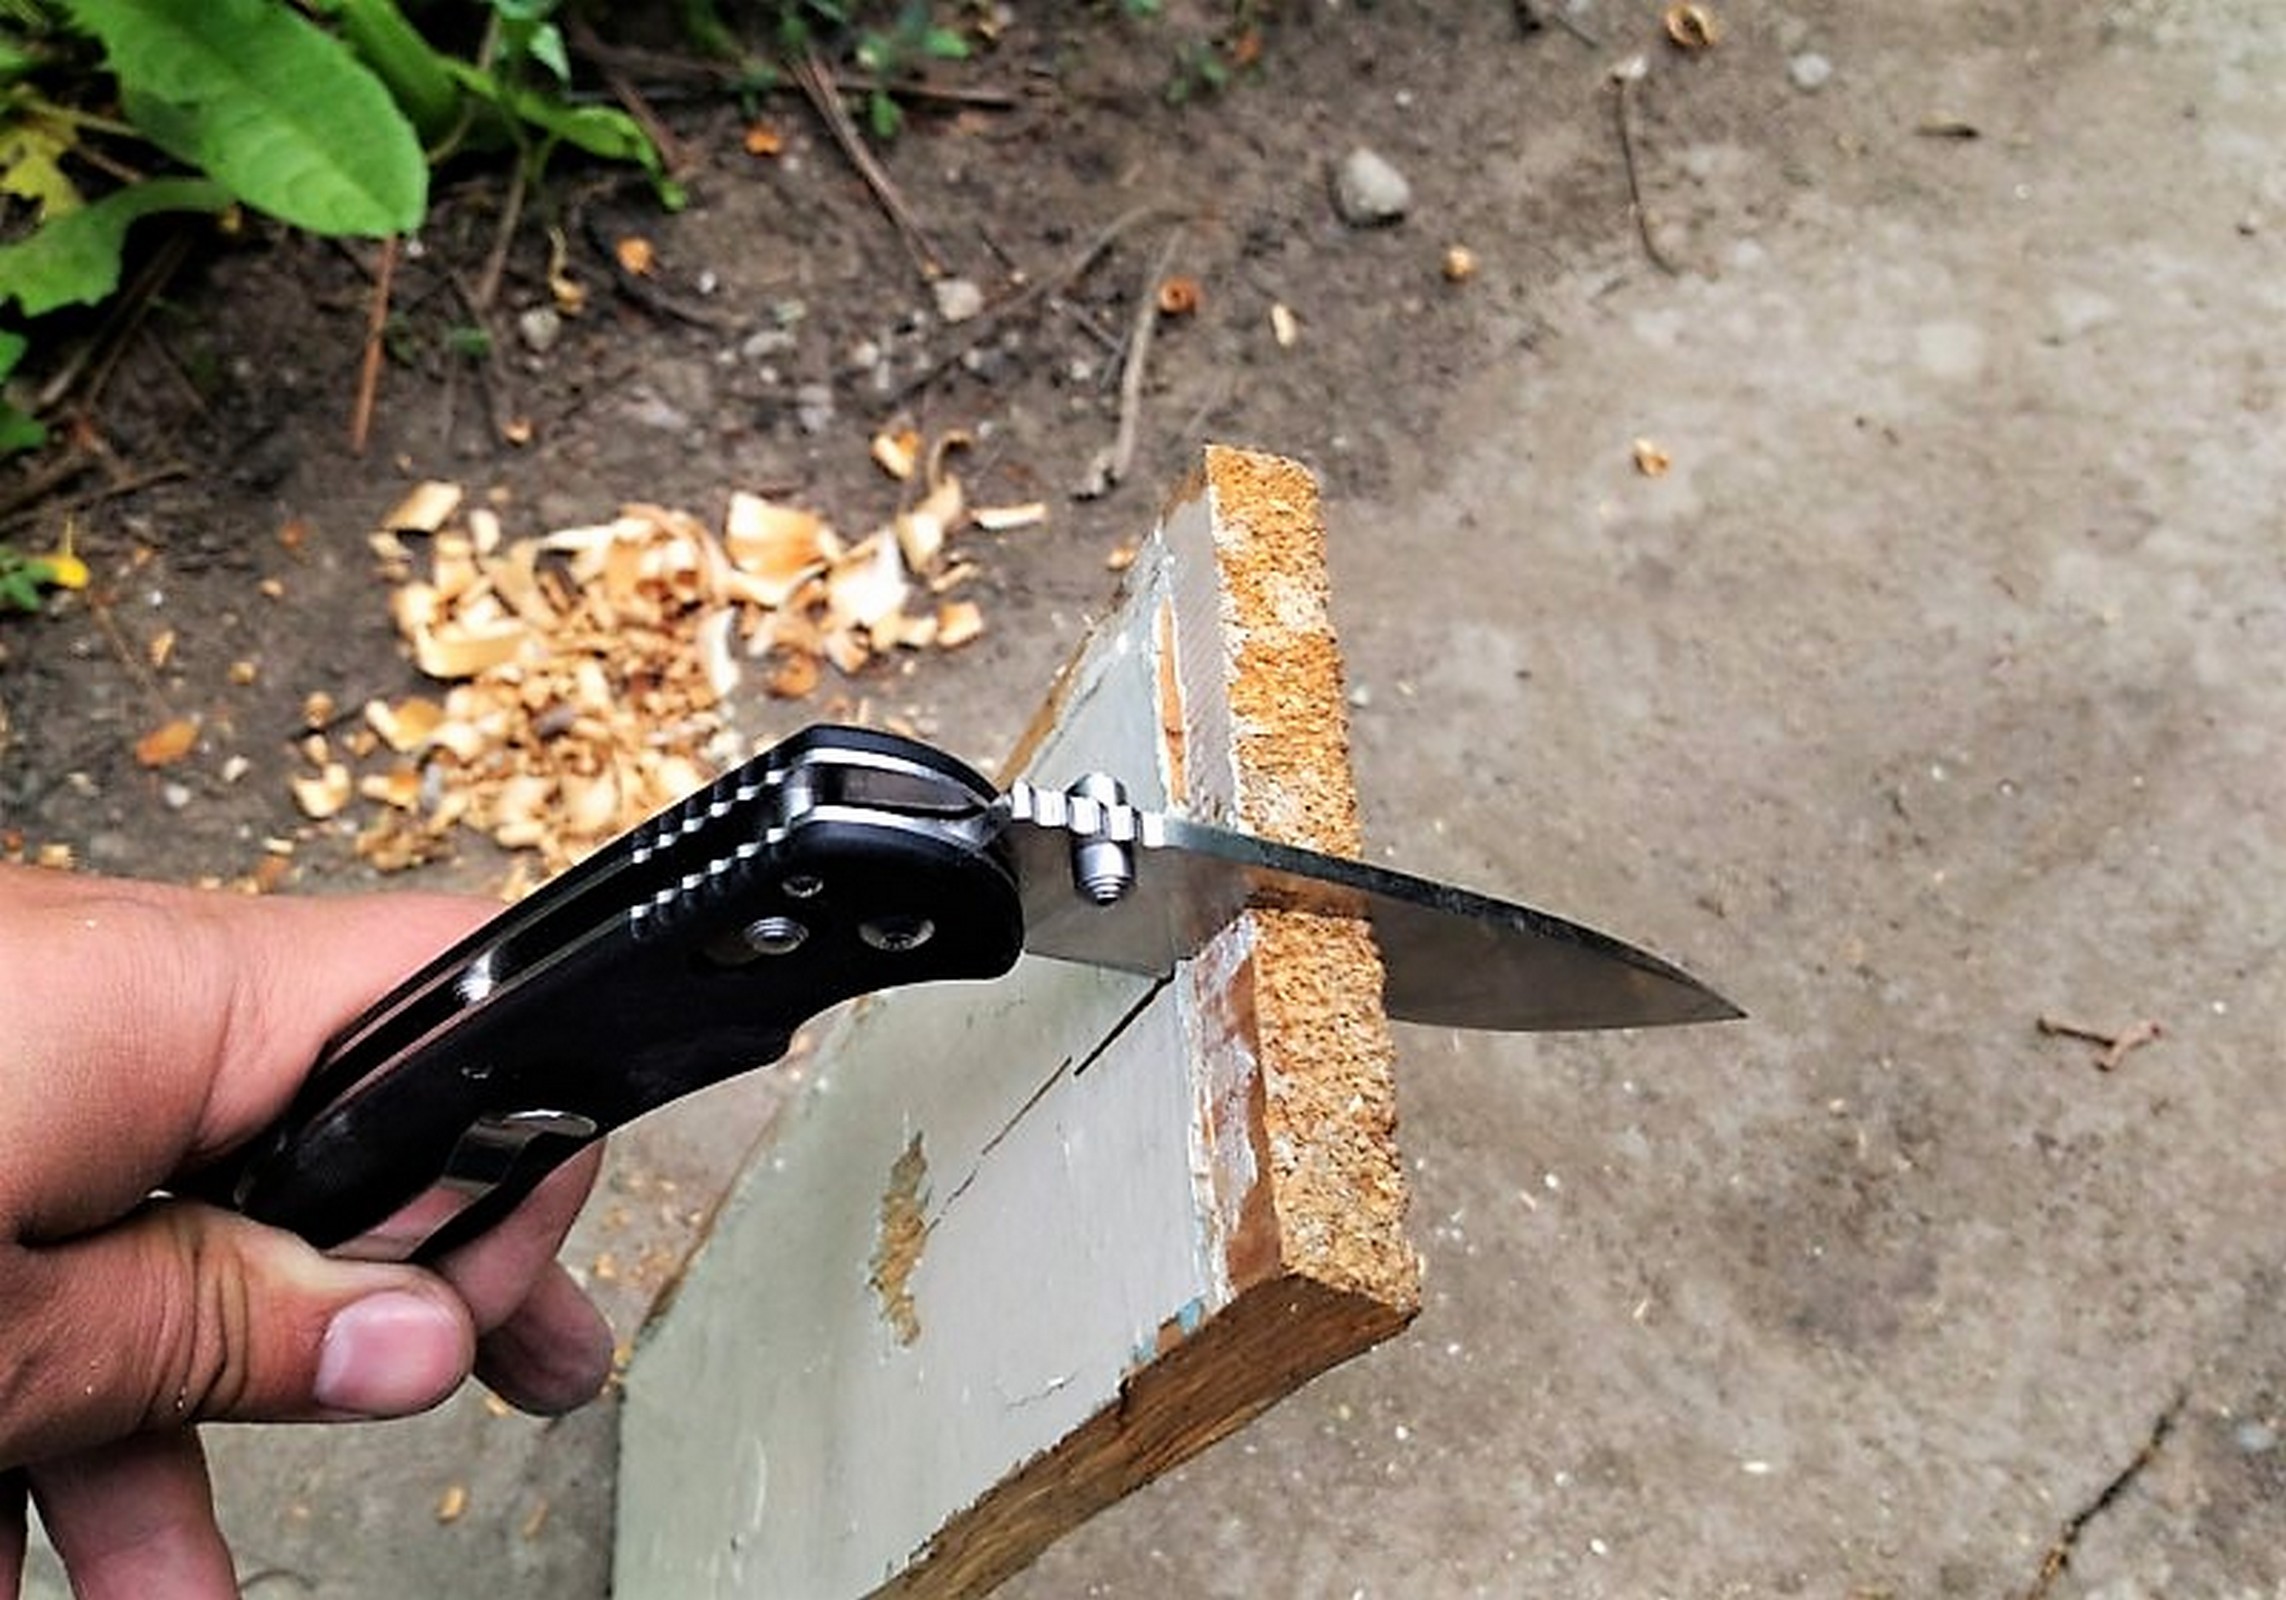 Klapp Taschen Einhand Outdoor Freizeit Angeln Zelten Messer GANZO G740 Schwarz